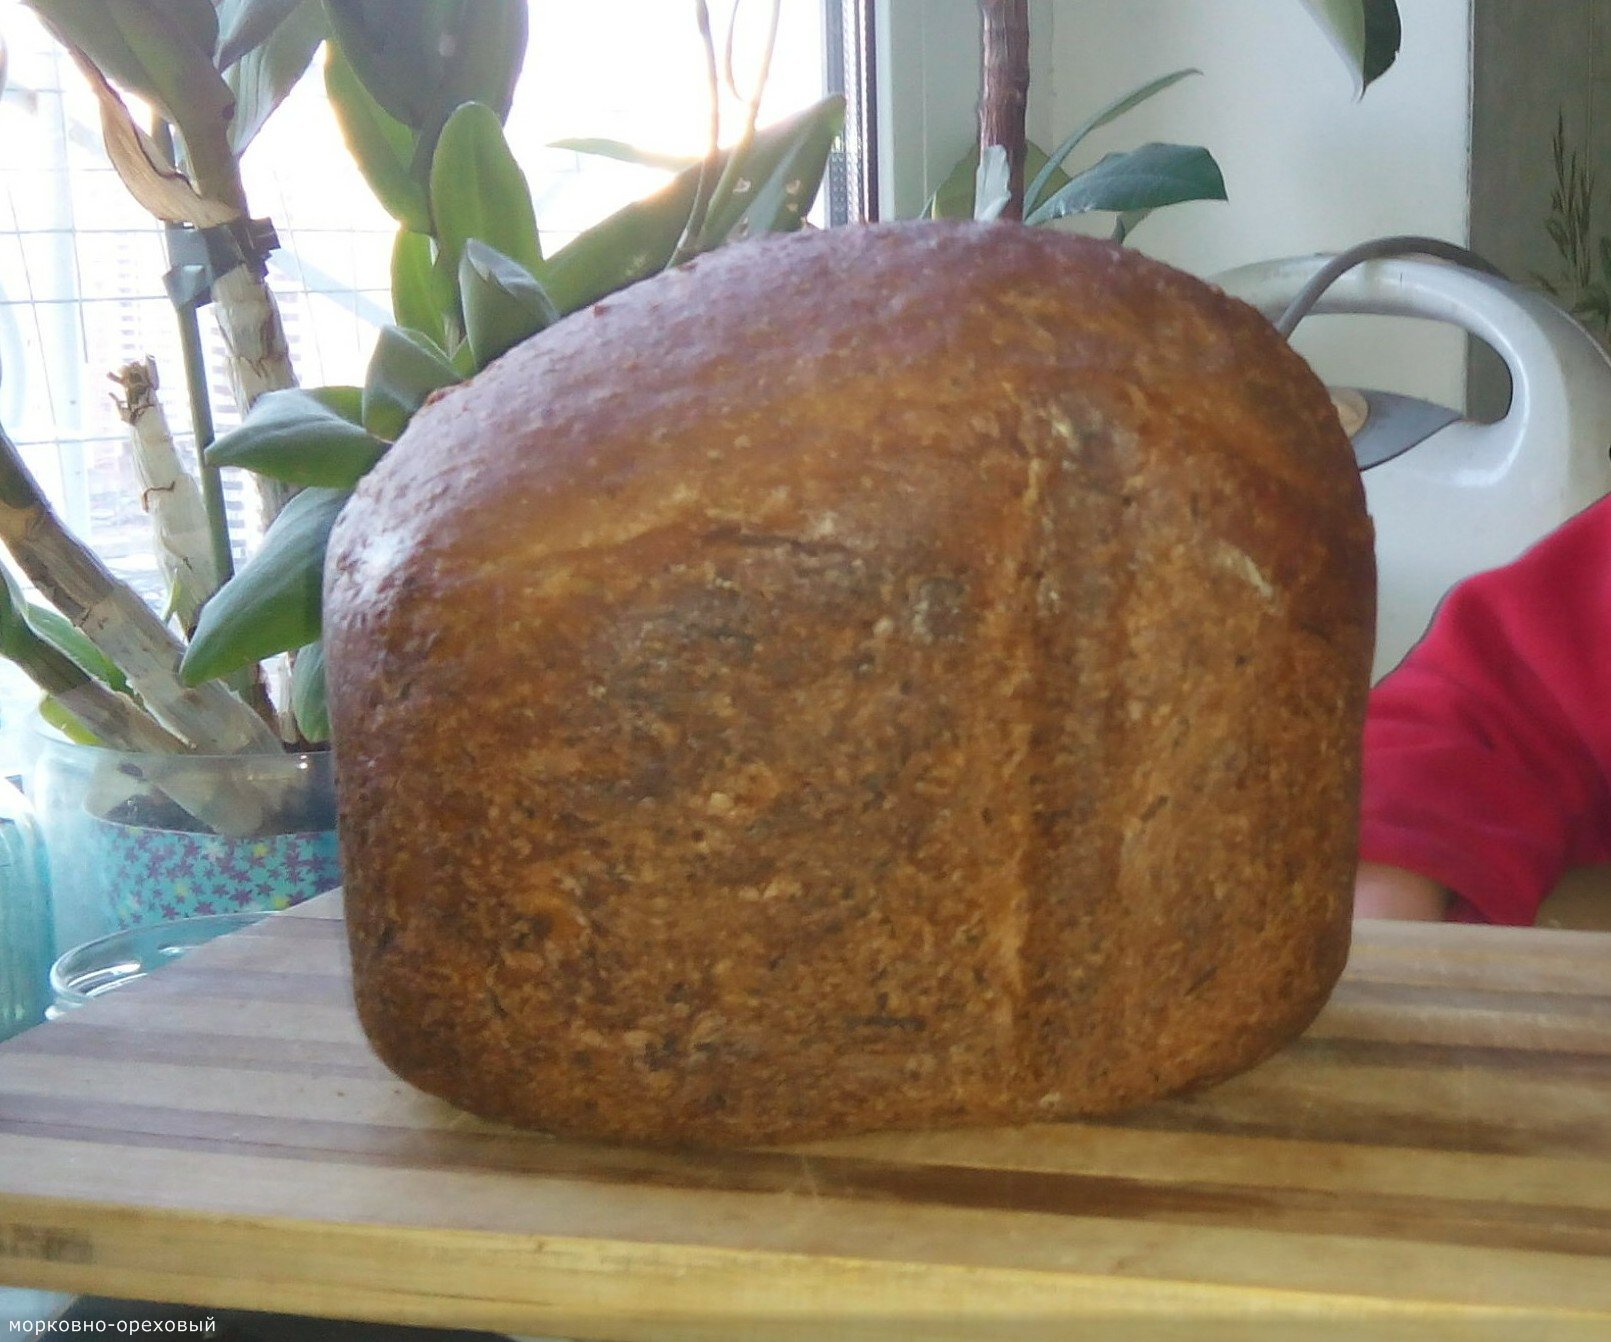 خبز الجزر مع الجوز في صانع الخبز